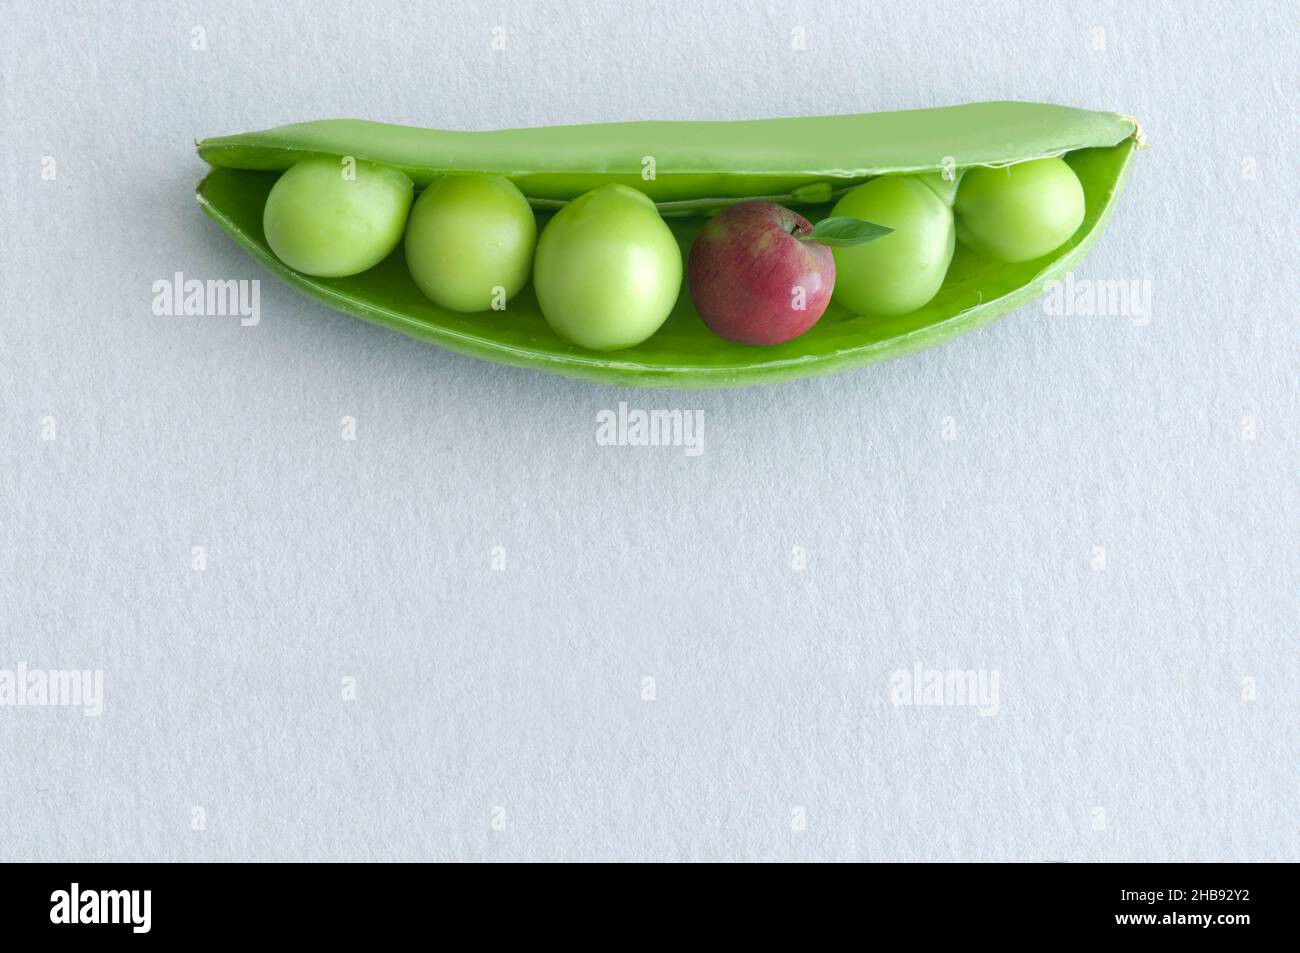 Petits pois dans une gousse avec pomme miniature, concept de régime équilibré Banque D'Images